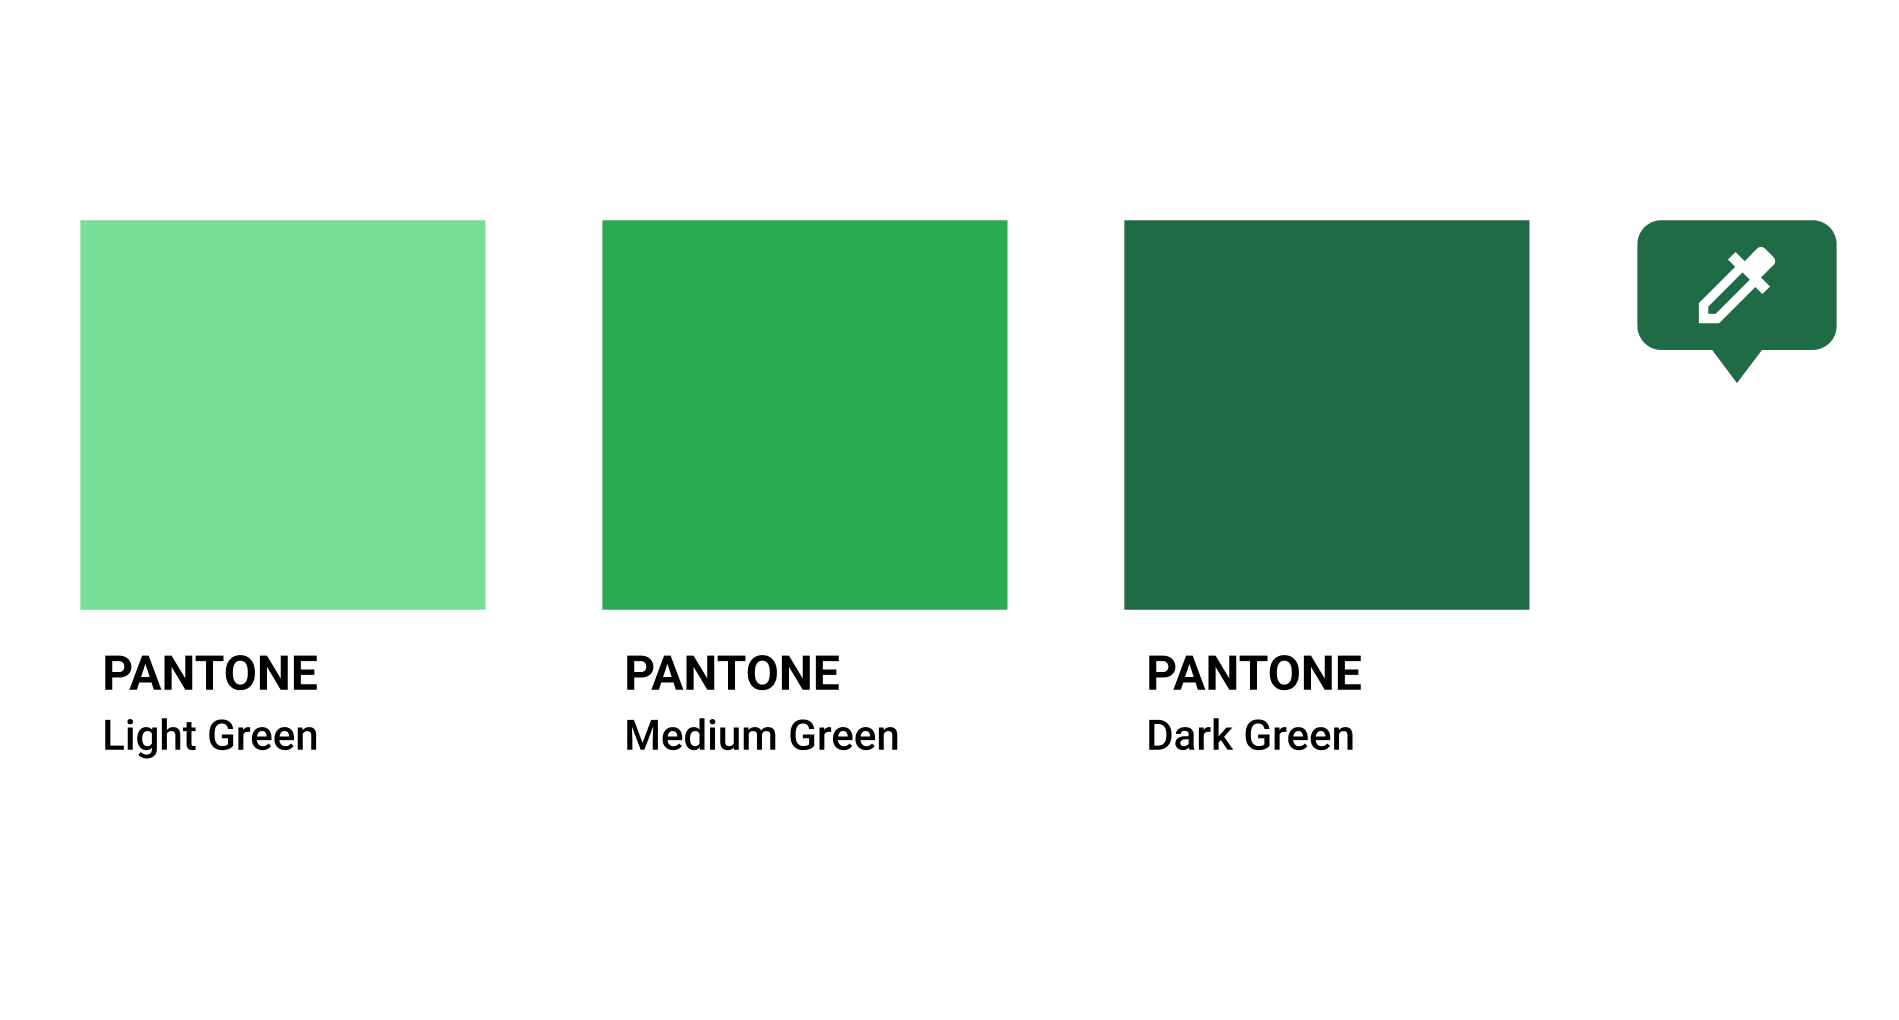 Pantone green shades